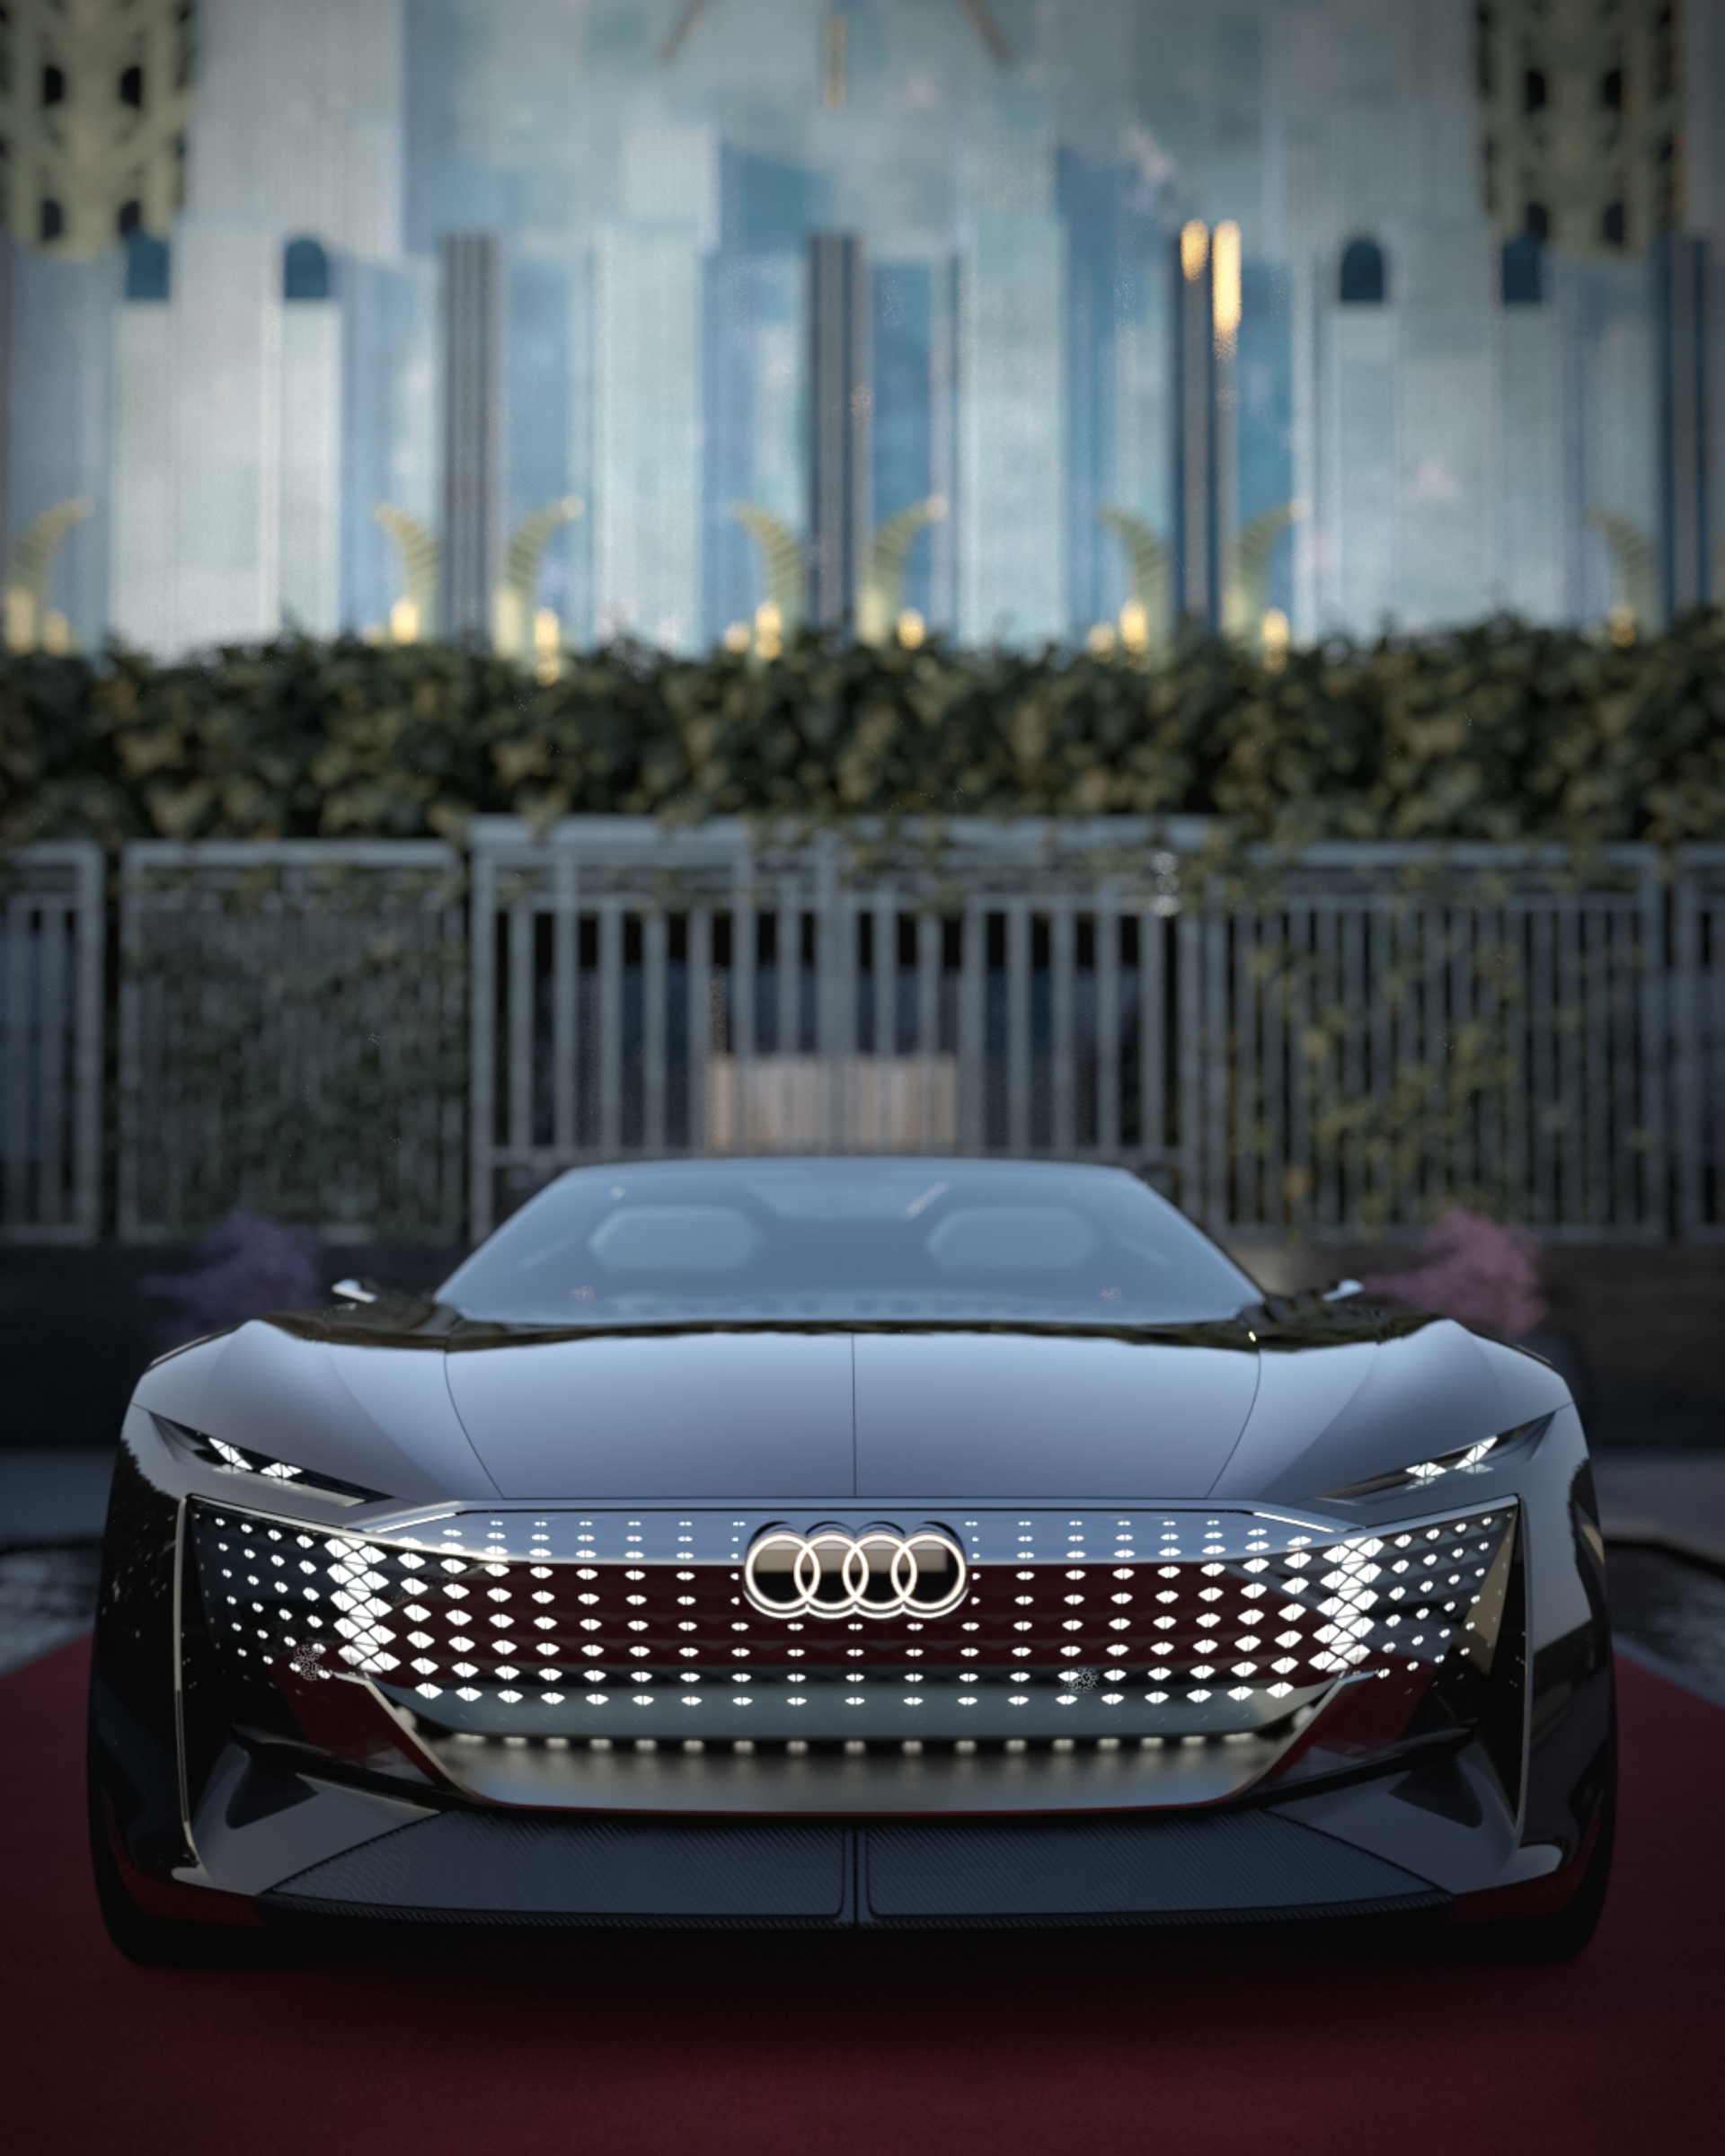 Audi skysphere concept front